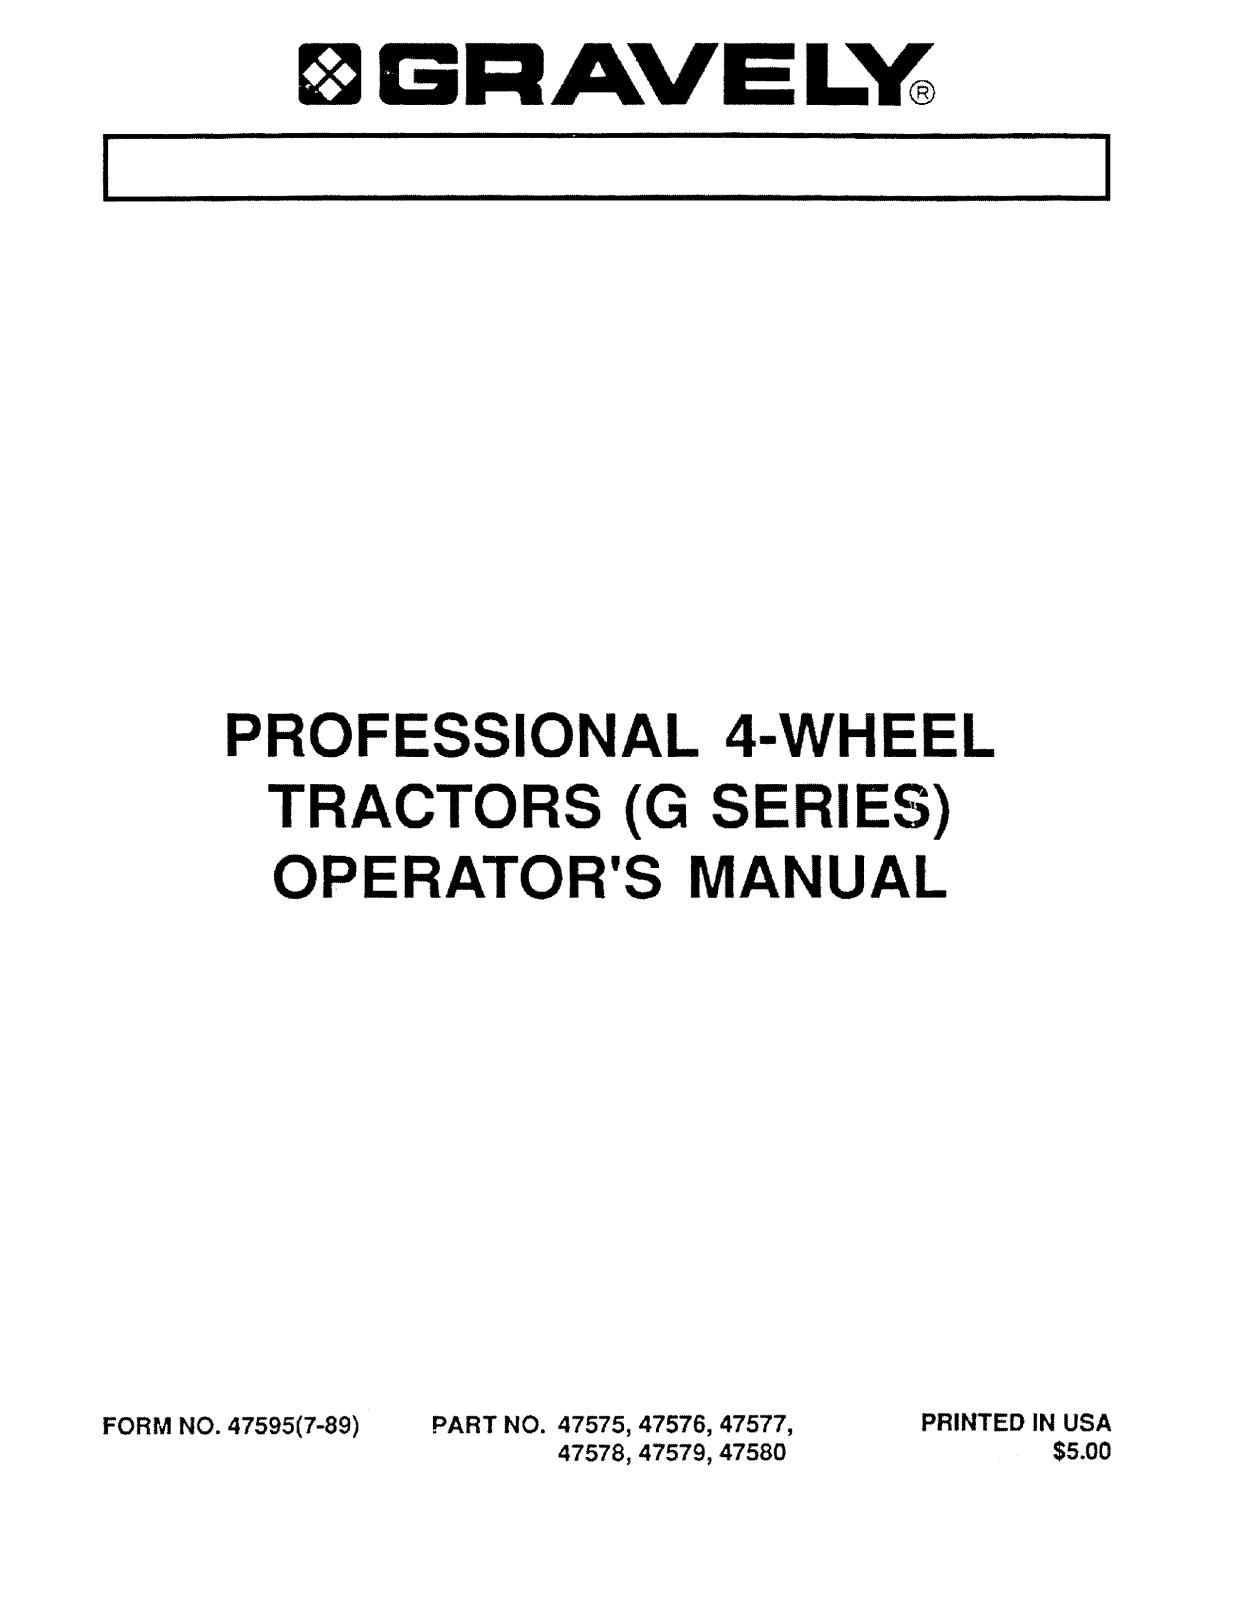 Gravely 16-G User Manual